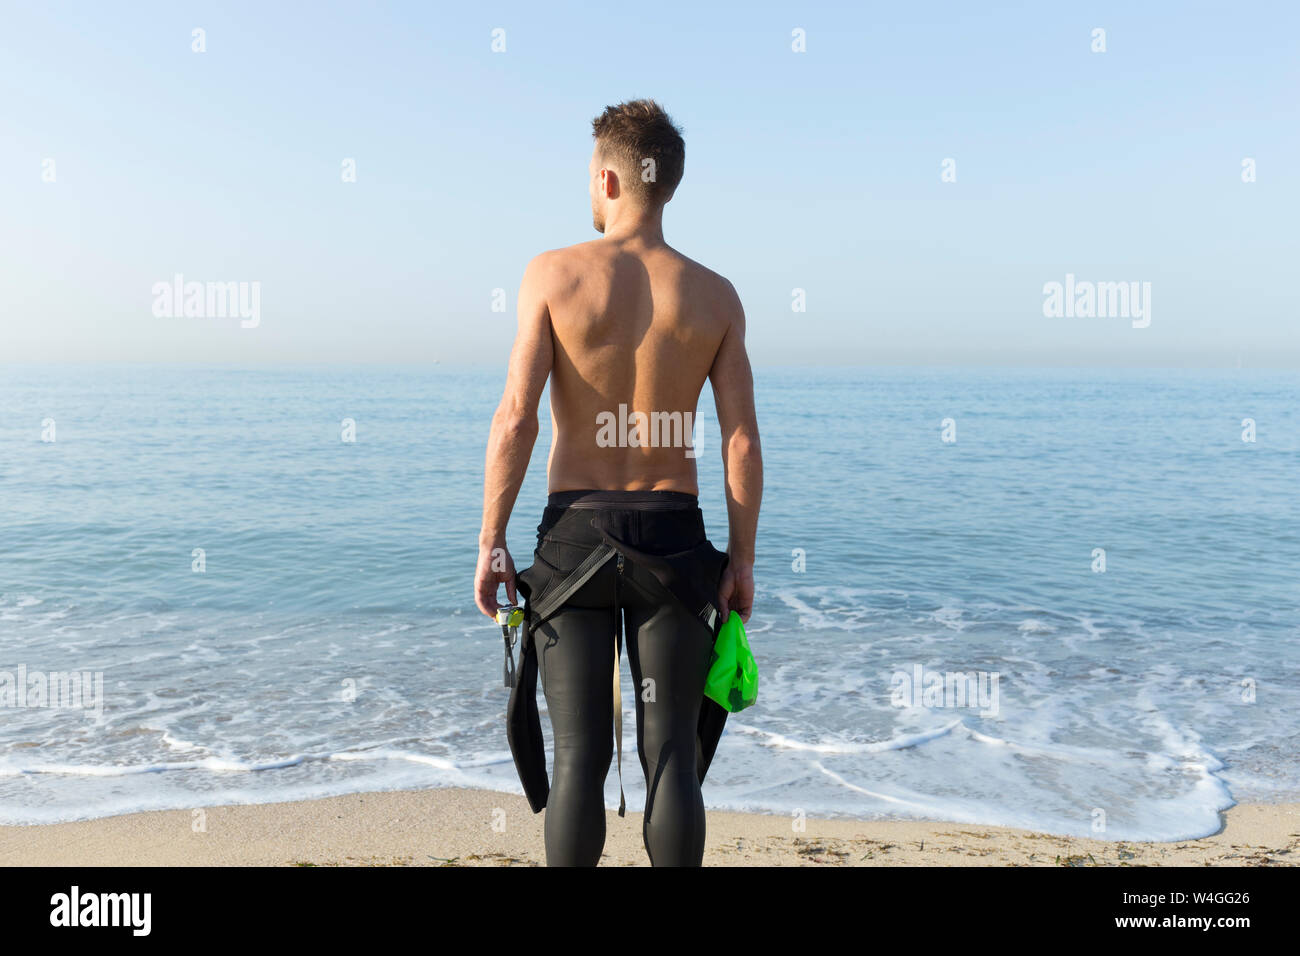 Vista posteriore del giovane atleta sulla spiaggia, preparazione di nuotare Foto Stock